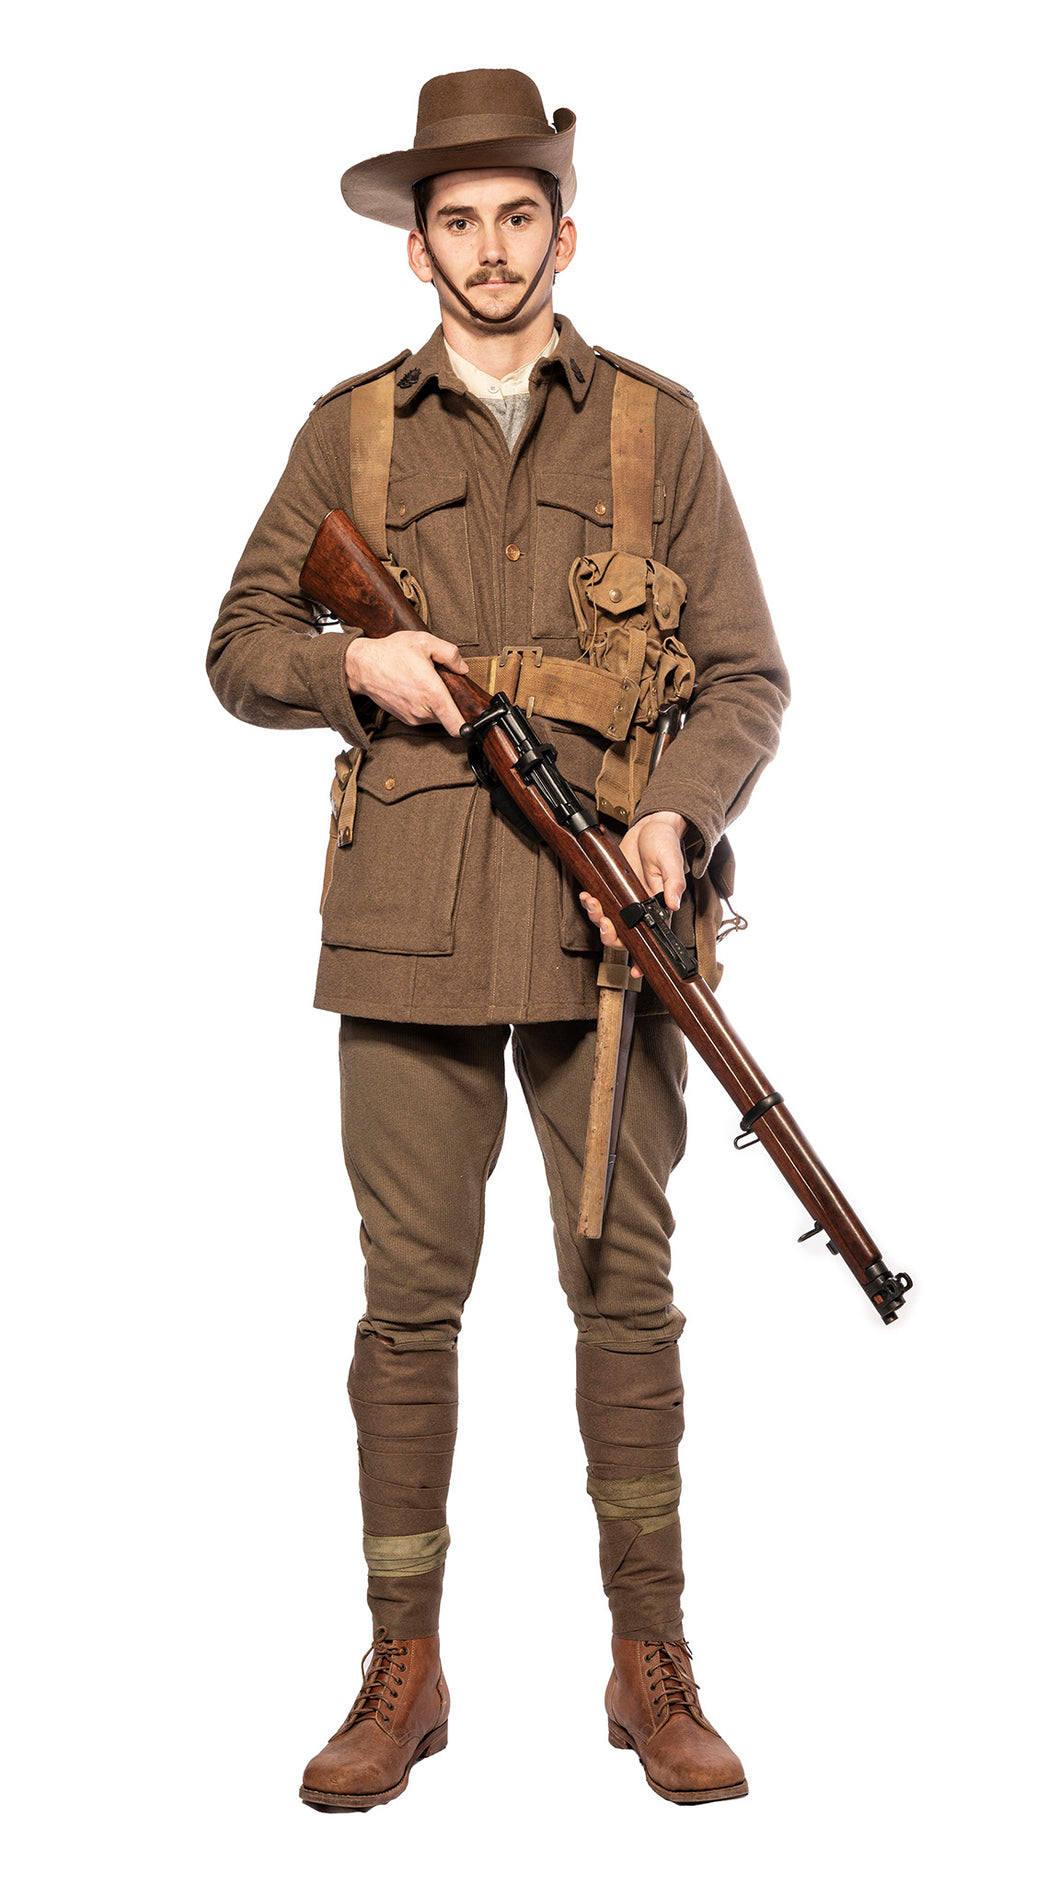 WW1 Australian soldier